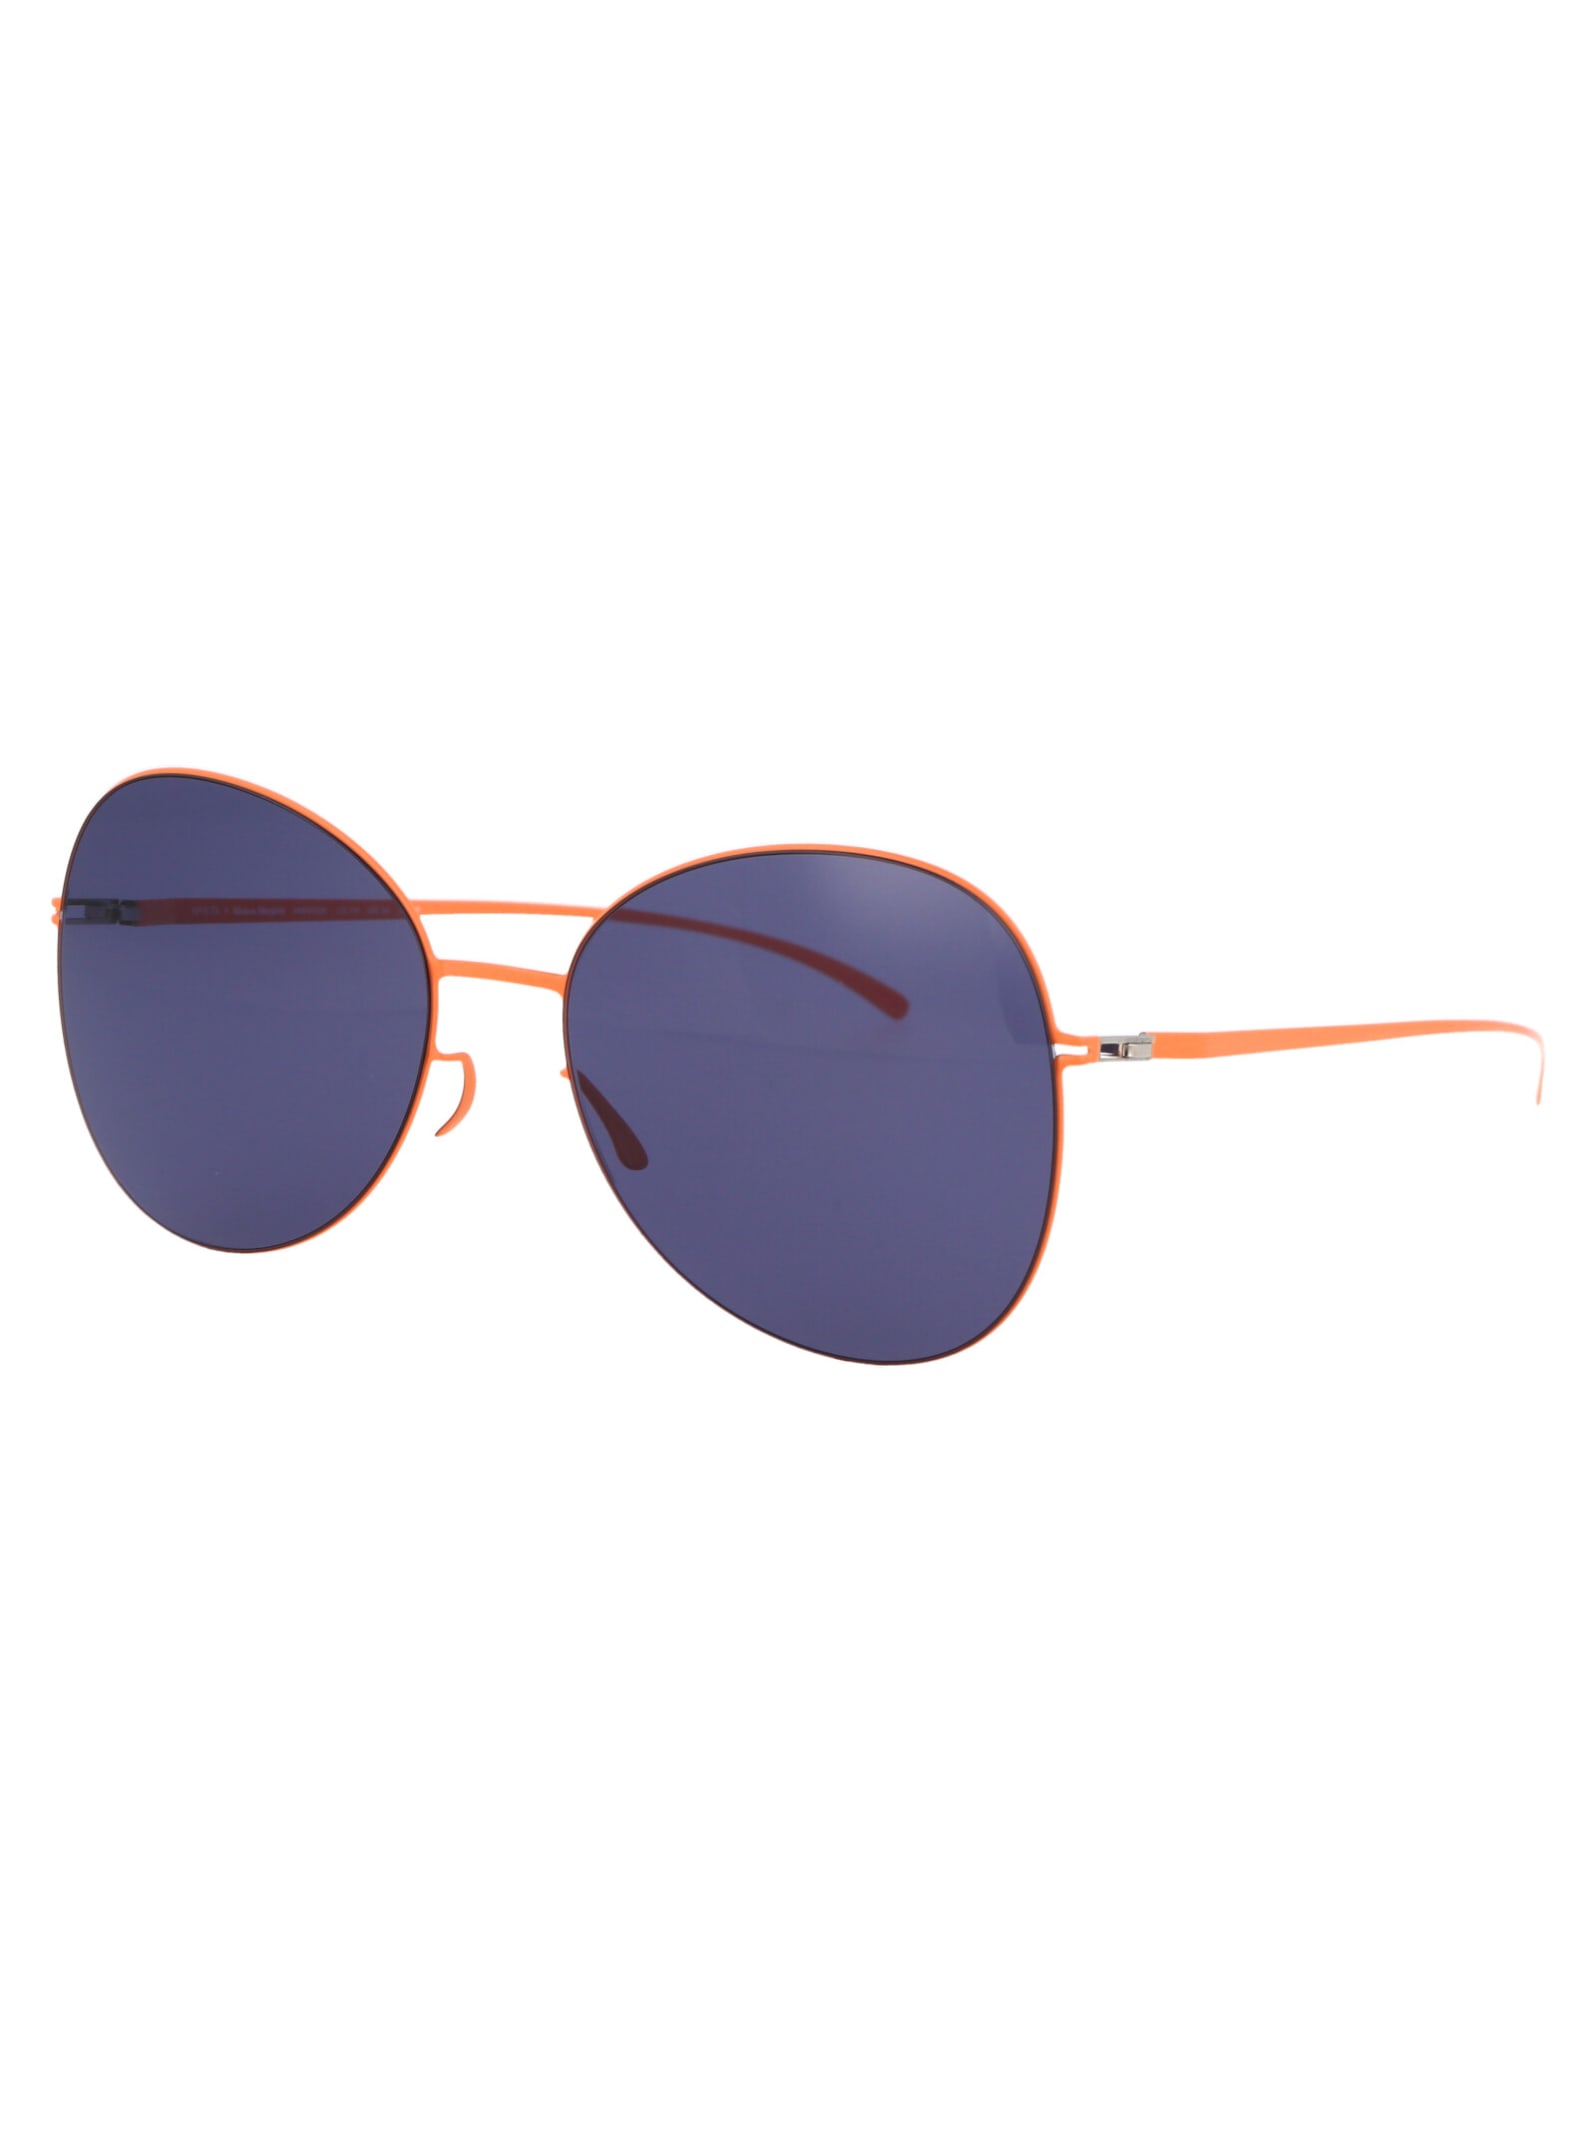 Shop Mykita Mmesse025 Sunglasses In 443 E19 Apricot Indigo Solid